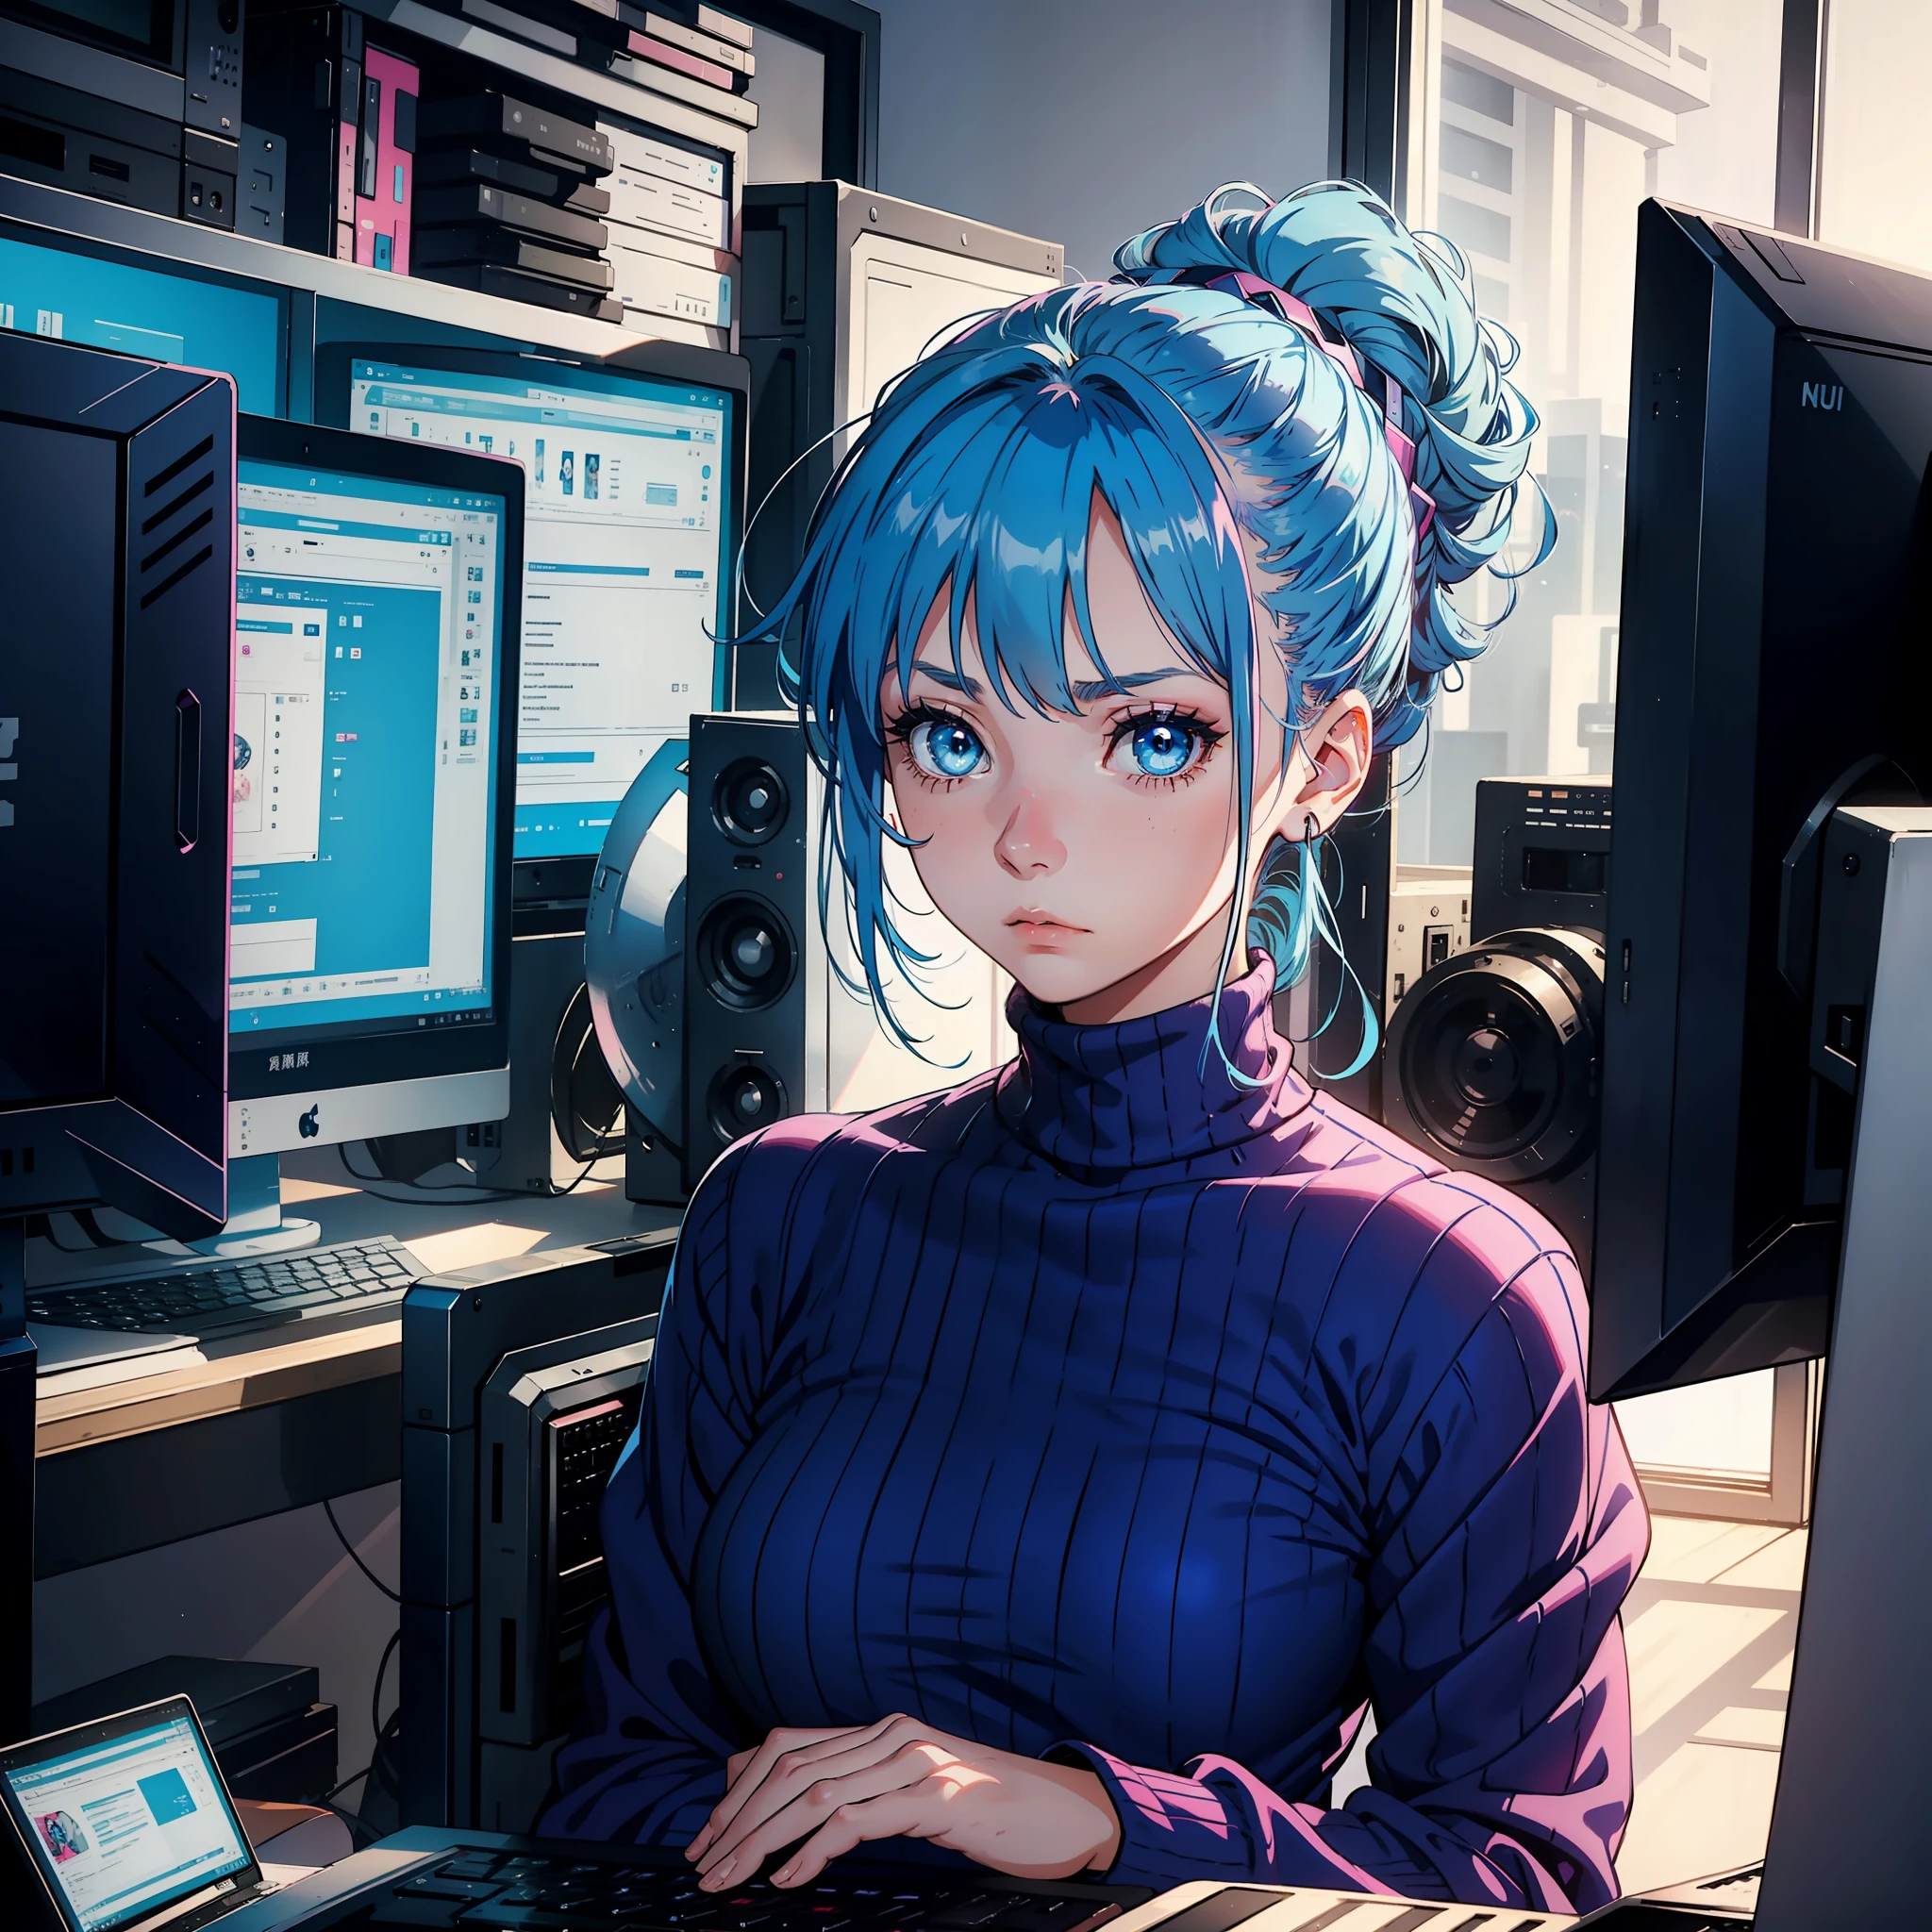 Uma menina de 20 anos com cabelo azul, olhos azuis, Updo, vestido rosa de gola alta, olhando para a tela do computador, expressão triste, cabeça baixa, Sozinho